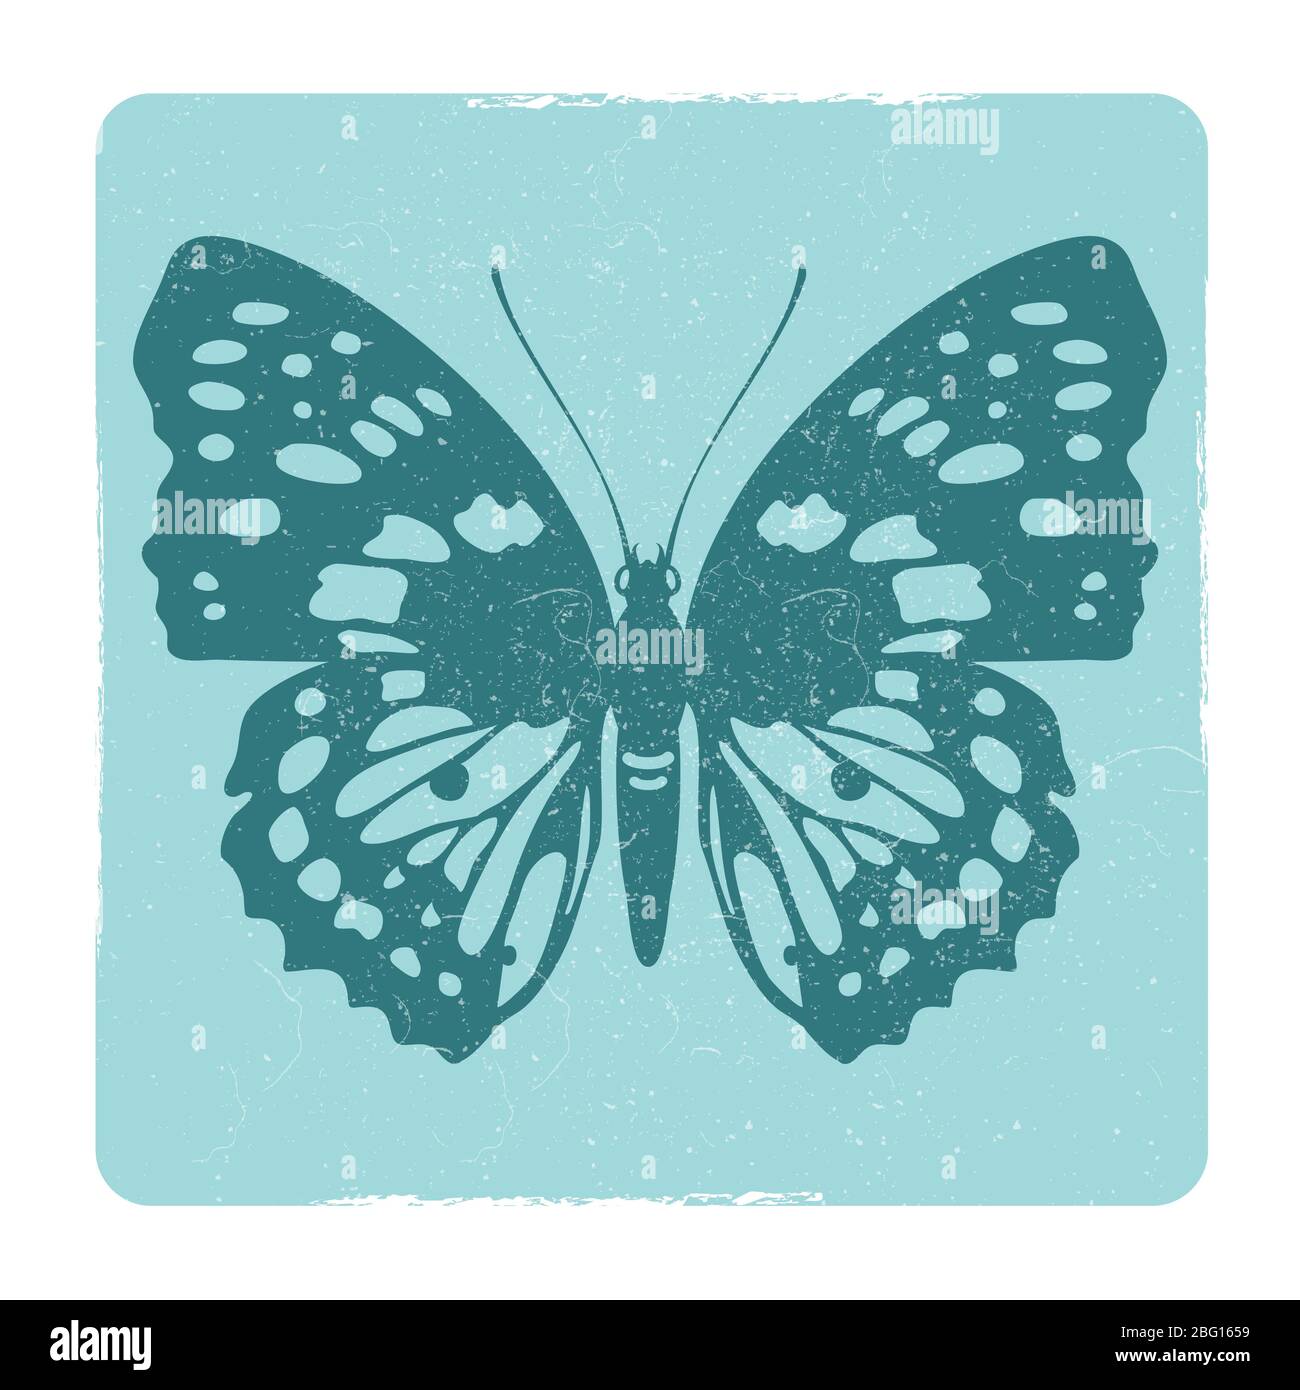 Illustration de la bannière silhouette d'insectes papillon Grunge et de l'emblème vectoriel de l'affiche Illustration de Vecteur